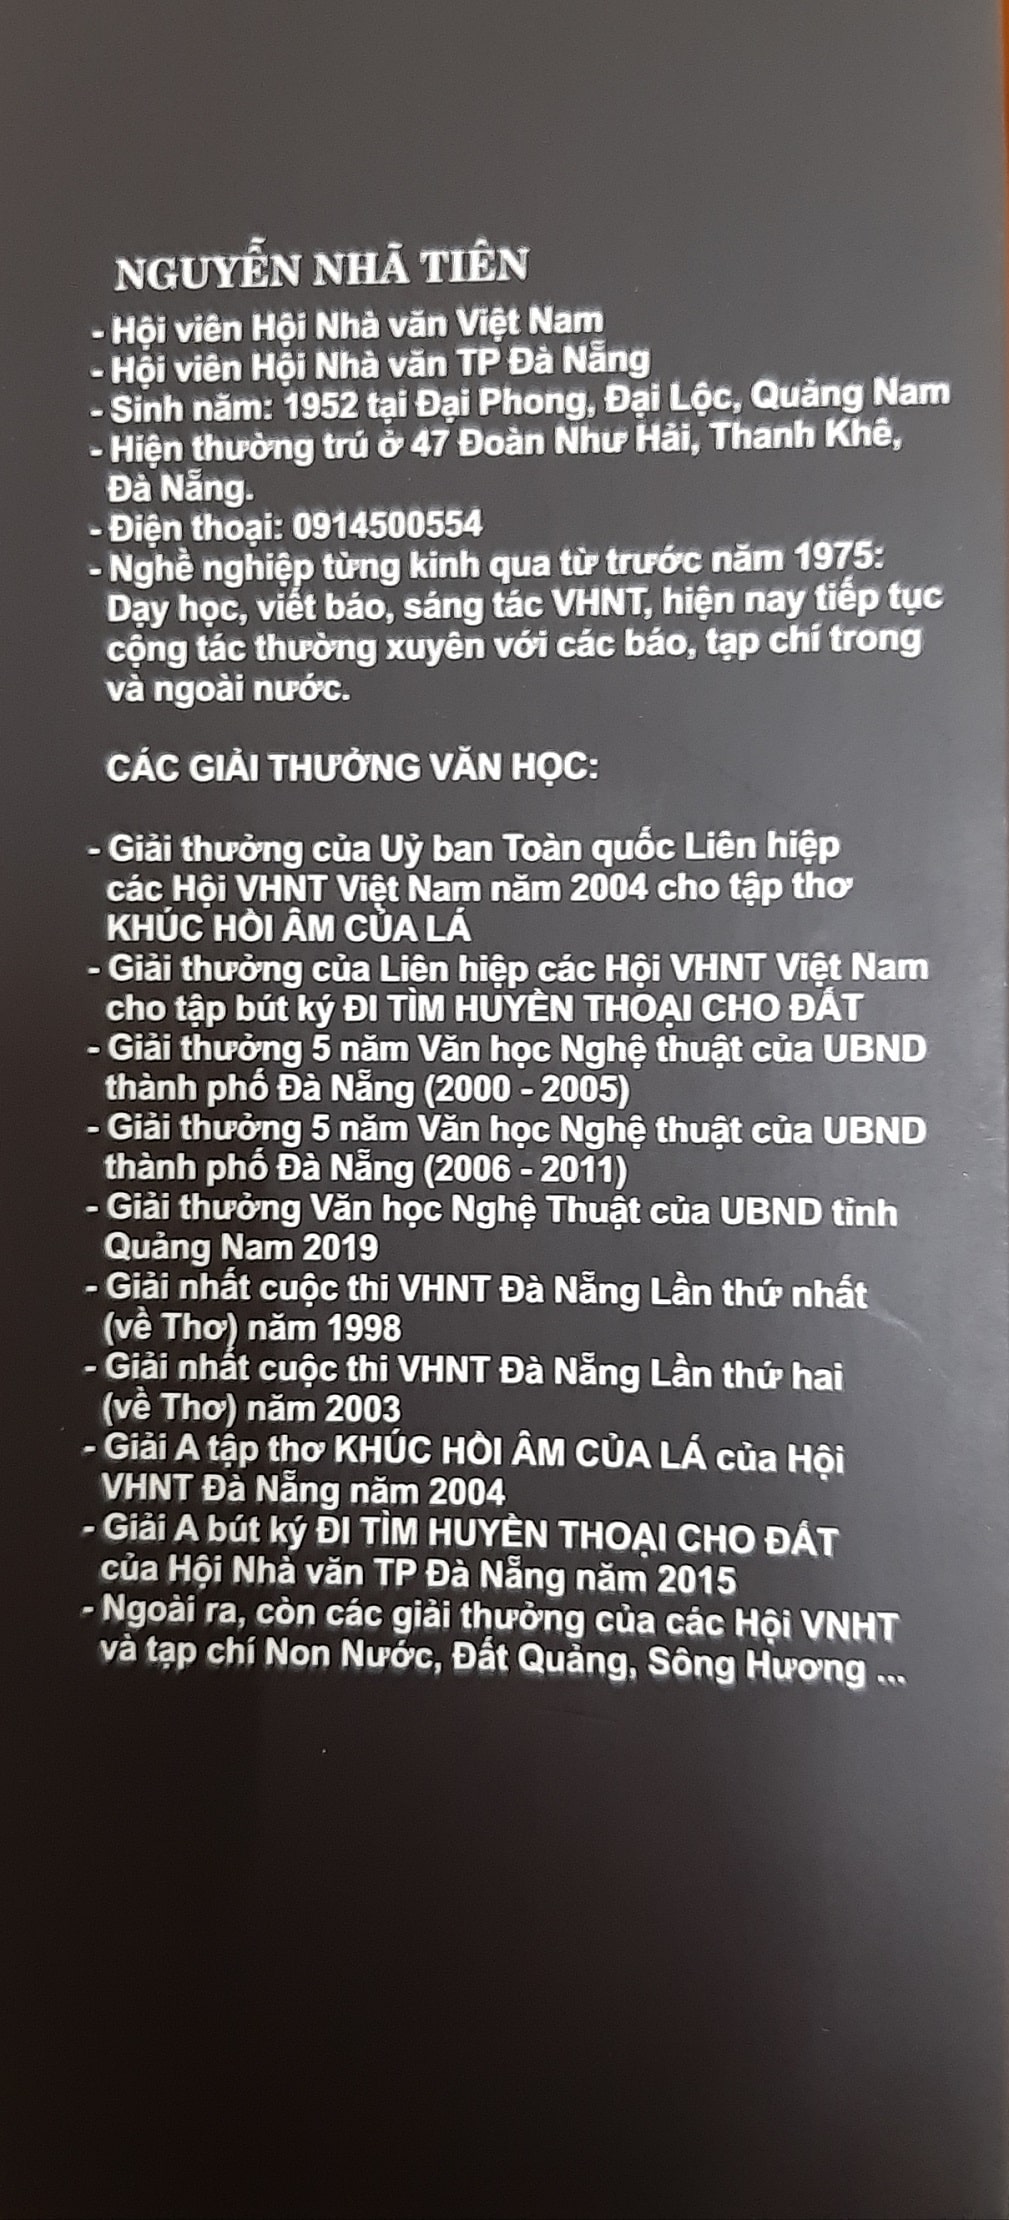 Tiểu sử Nhà thơ Nguyễn Nhã Tiên